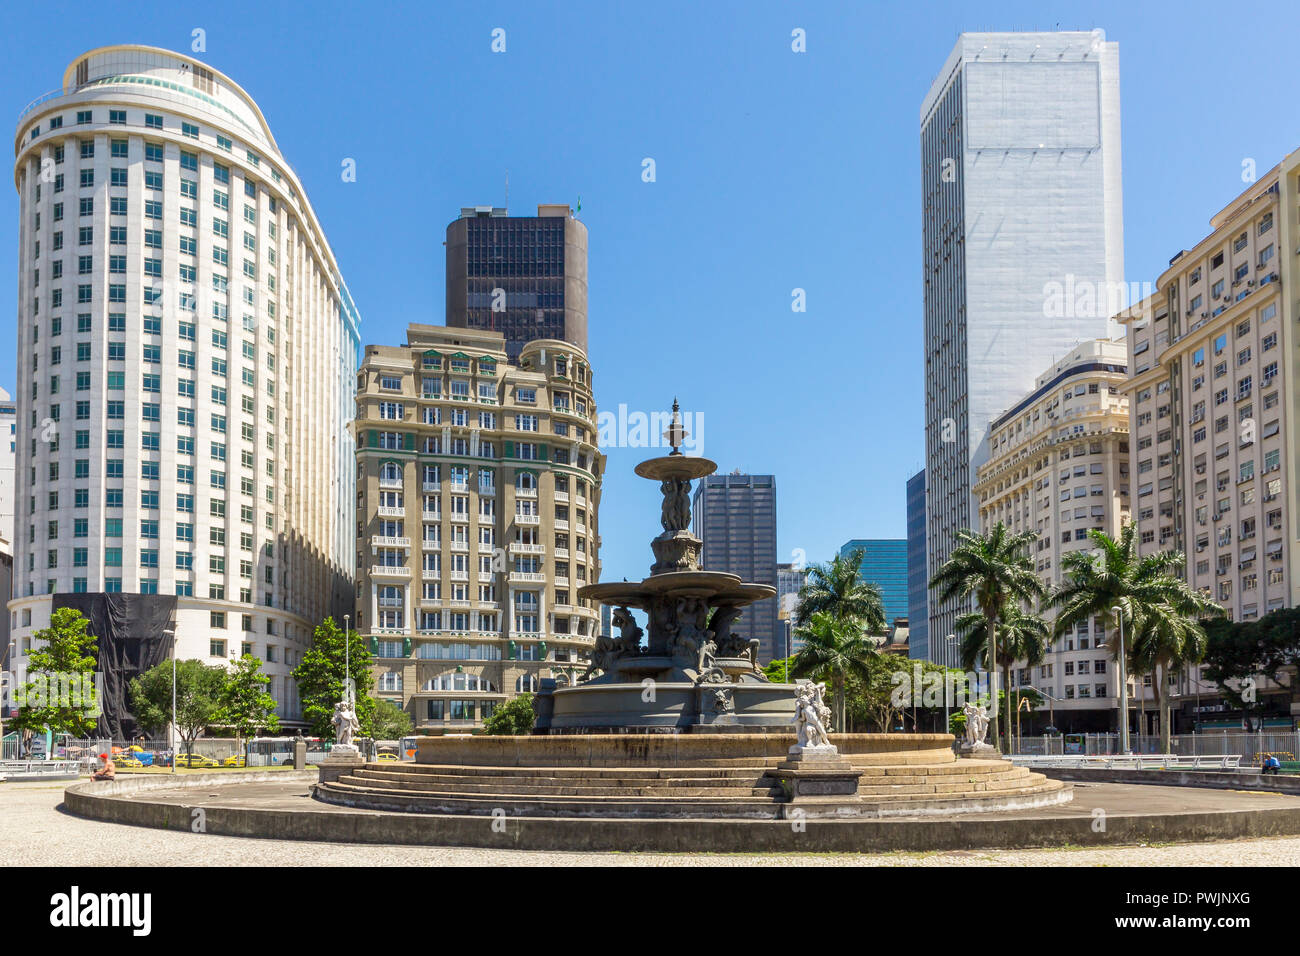 Vista desde el Mahatma Gandhi a los edificios de la Plaza Cinelândia, en el centro de la ciudad de Río de Janeiro, Brasil, América del Sur Foto de stock